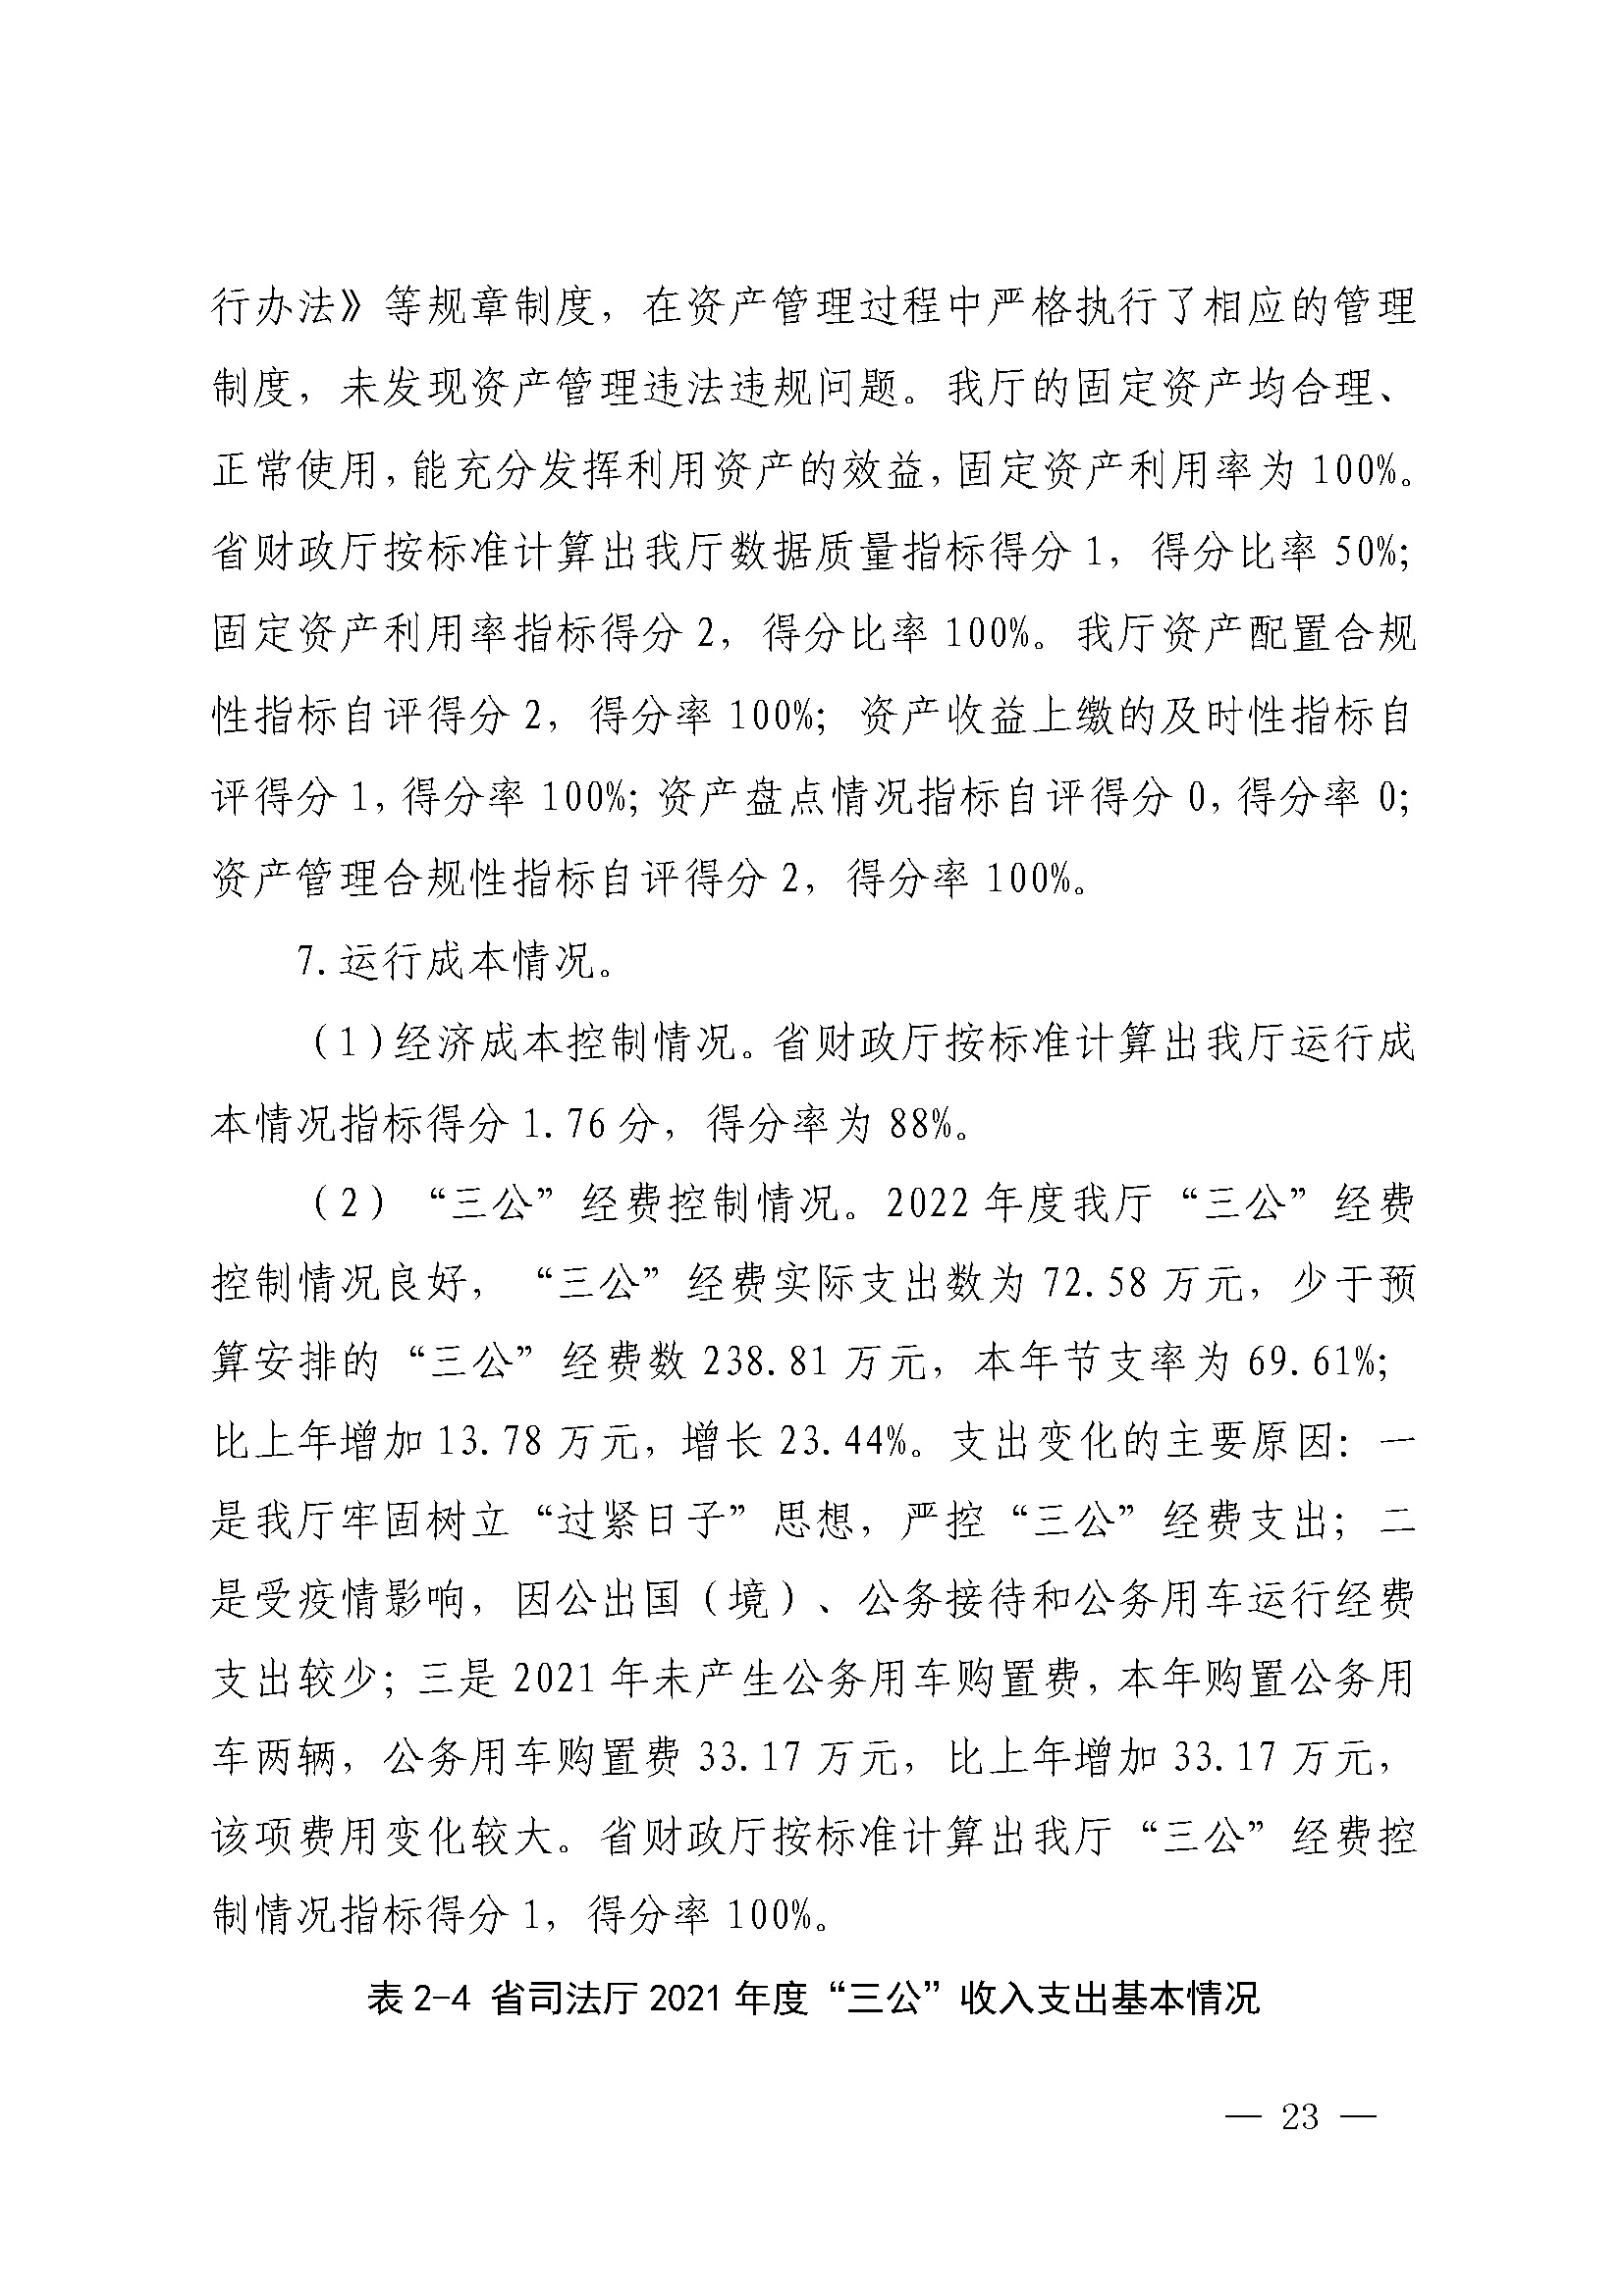 广东省司法厅2022年度部门整体支出绩效自评报告_页面_23.jpg